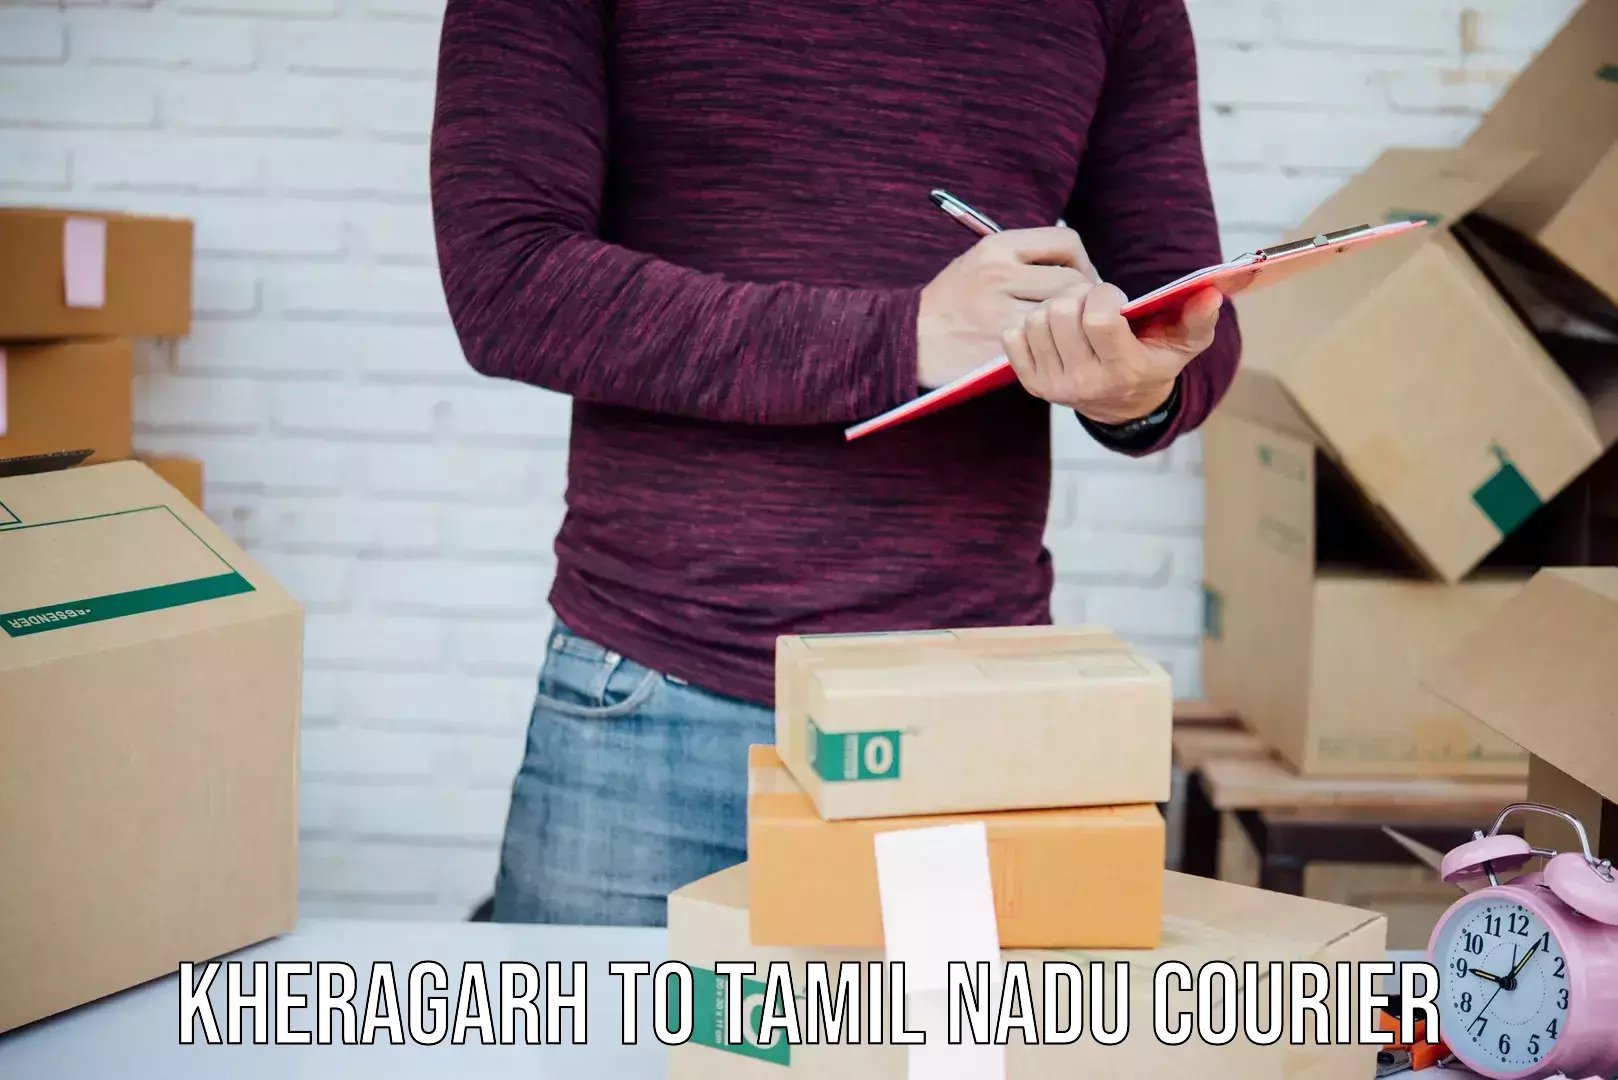 Advanced courier platforms Kheragarh to Tamil Nadu